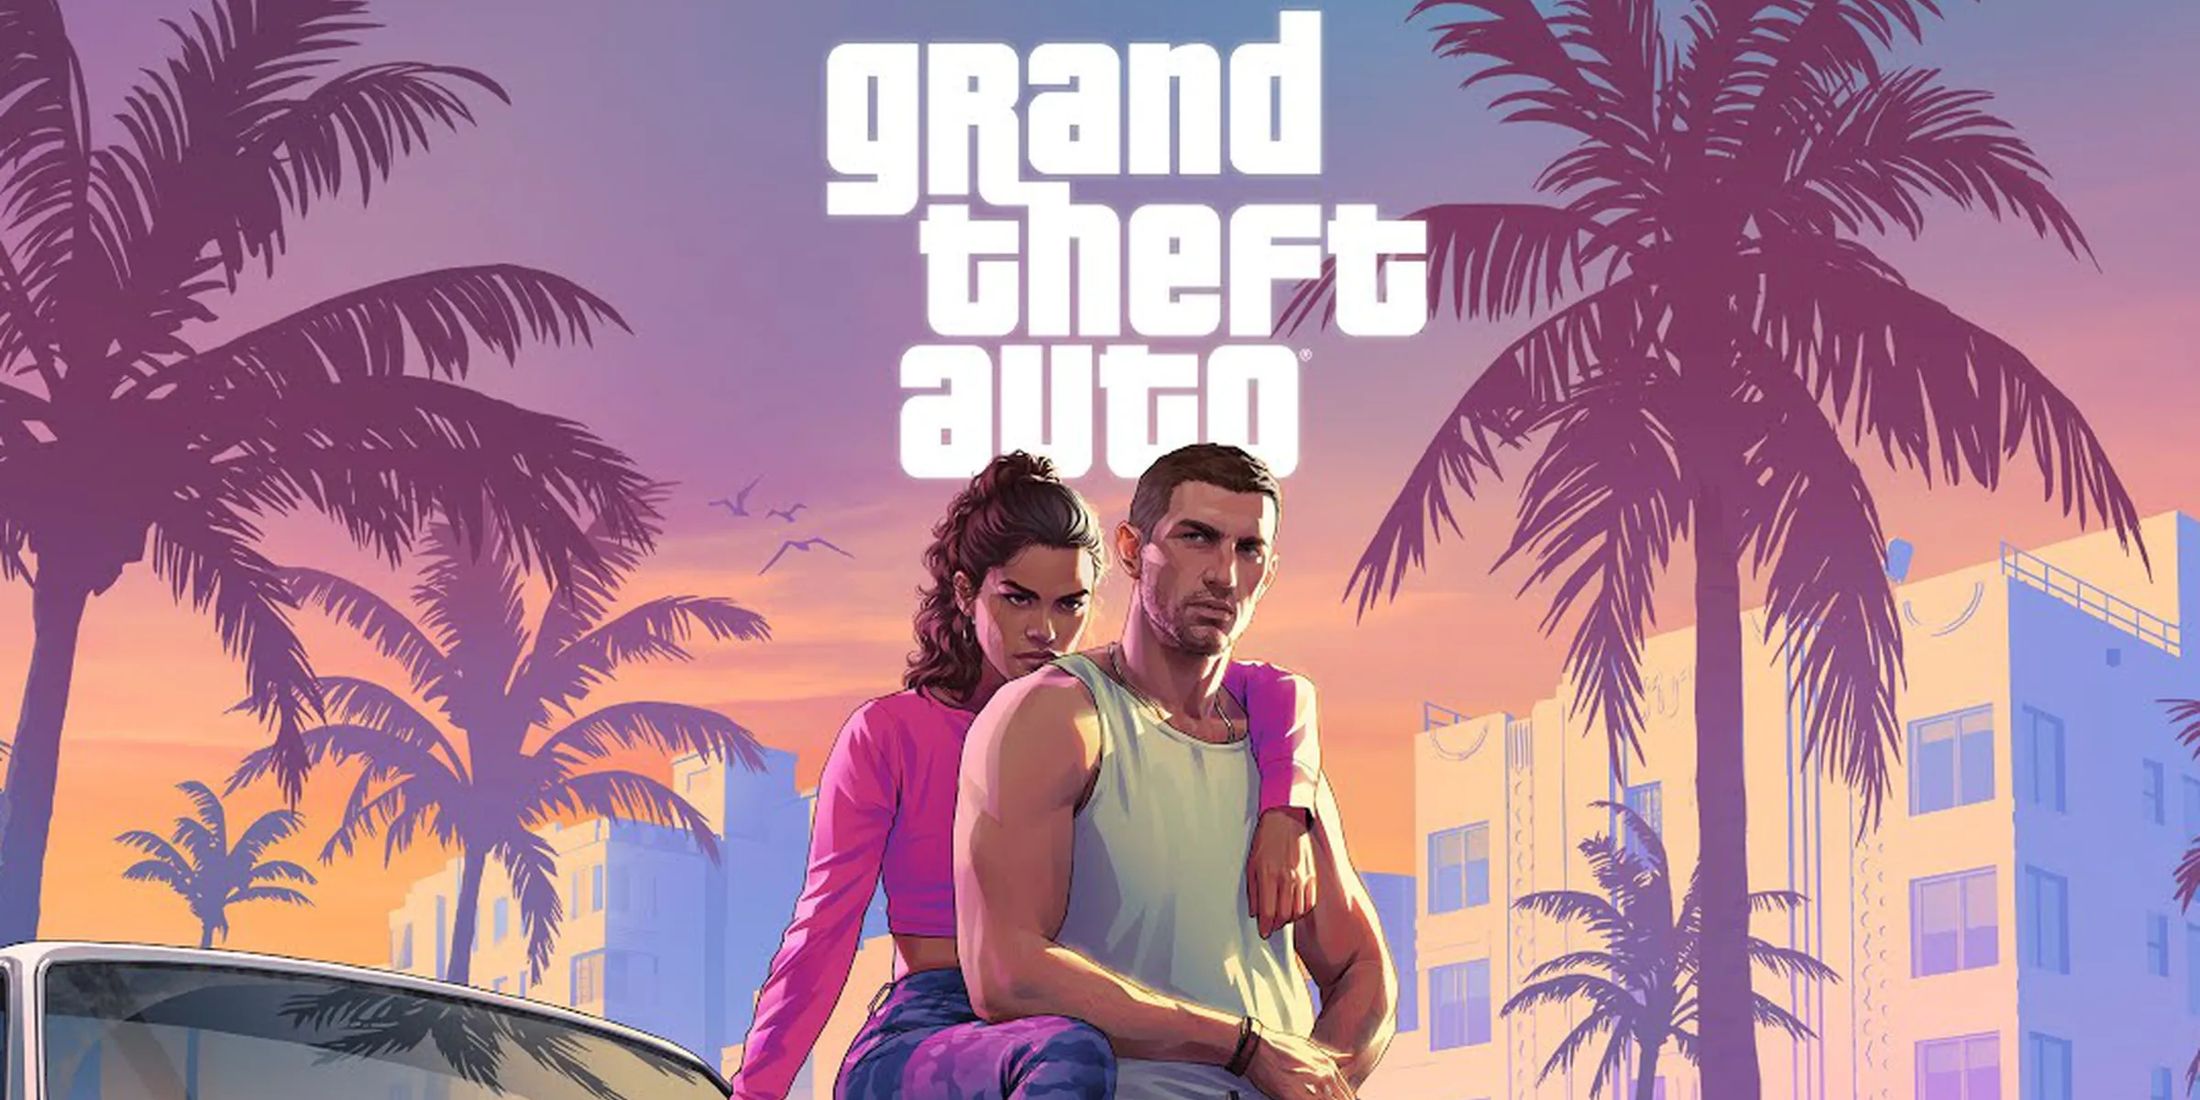 Помимо всего прочего, Grand Theft Auto 6, скорее всего, высмеивает одну тенденцию